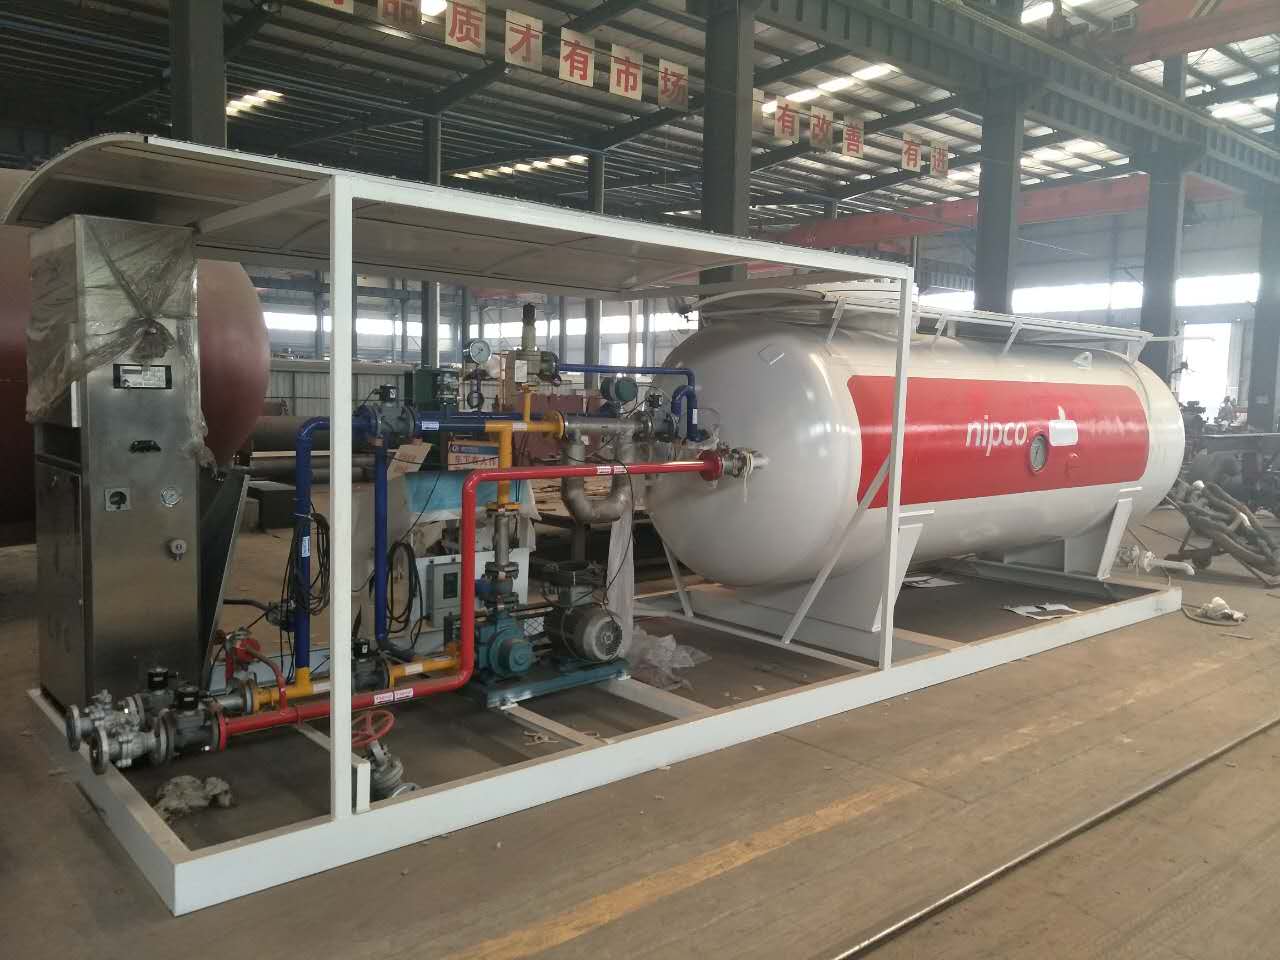 50000 Liters LPG Cylinder Filling Station for Africa Market